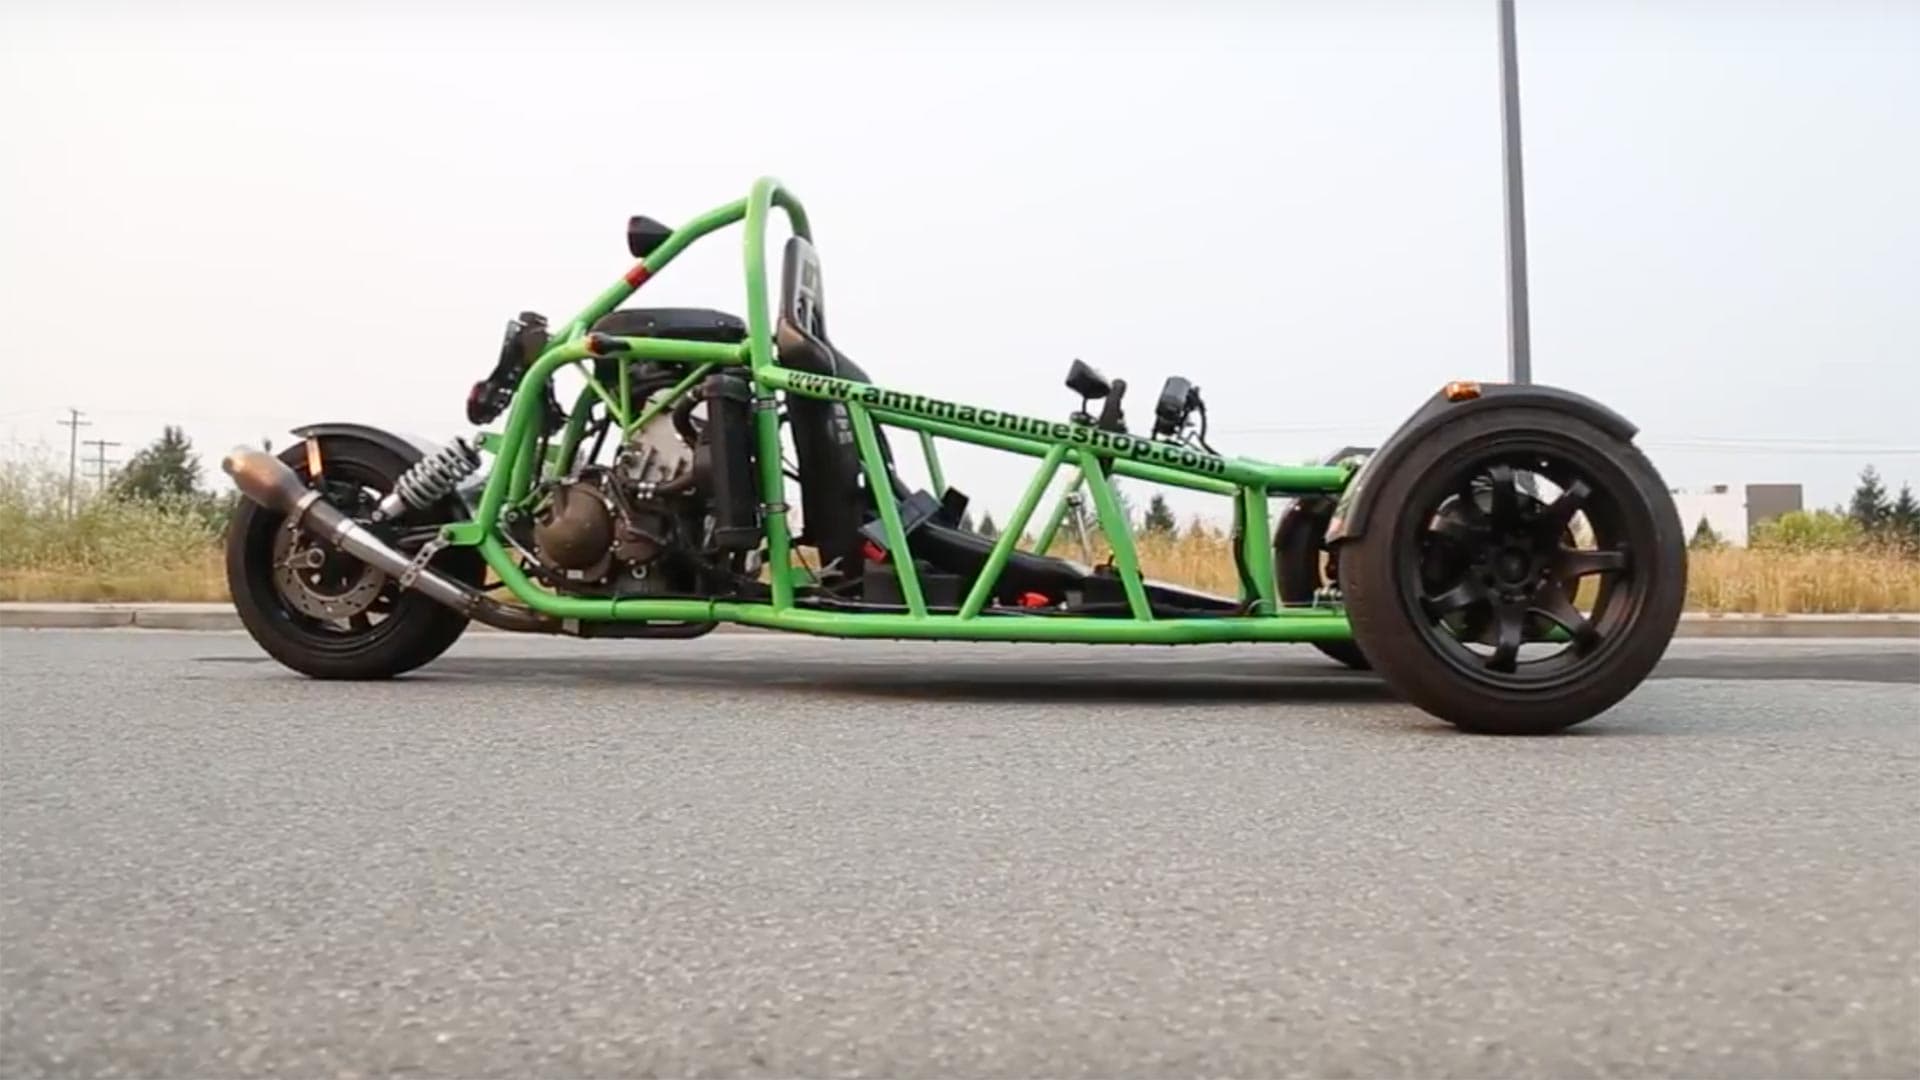 Check Out This Custom Kawasaki Ninja 900R-Powered Trike